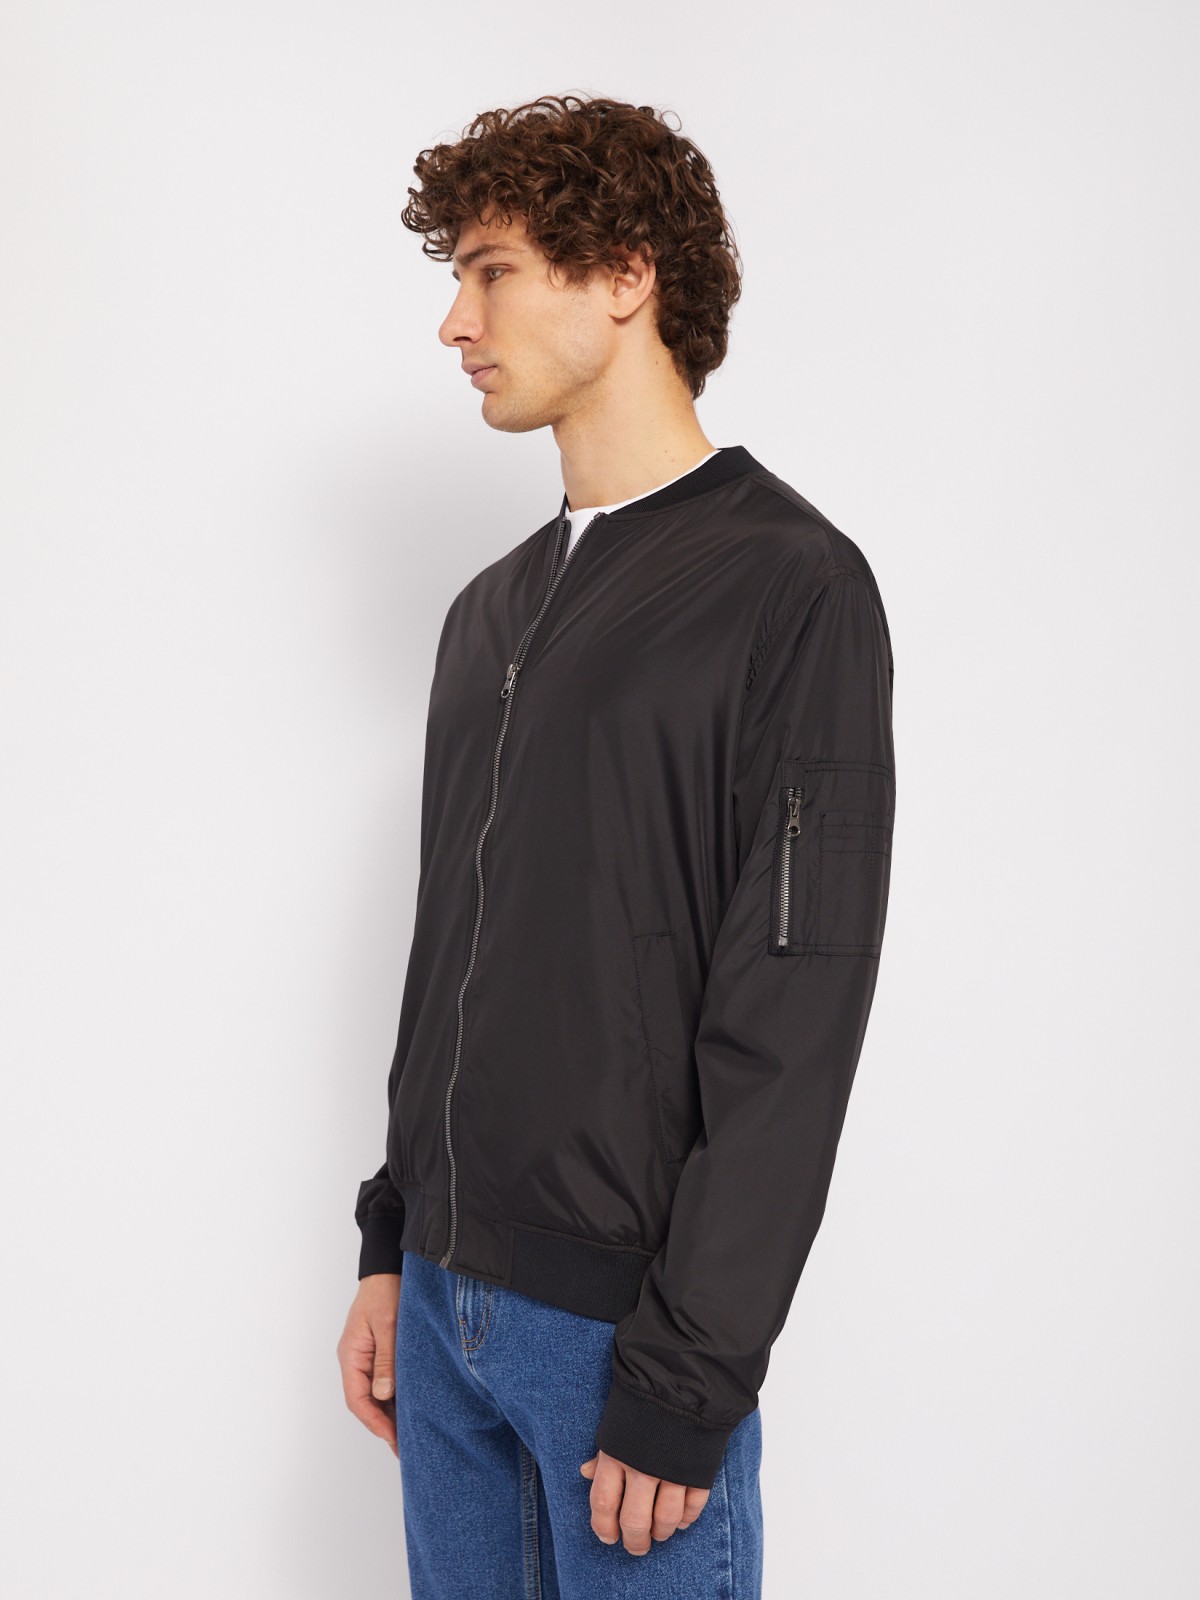 Куртка-бомбер на молнии без утеплителя zolla 01421564X034, цвет черный, размер M - фото 4